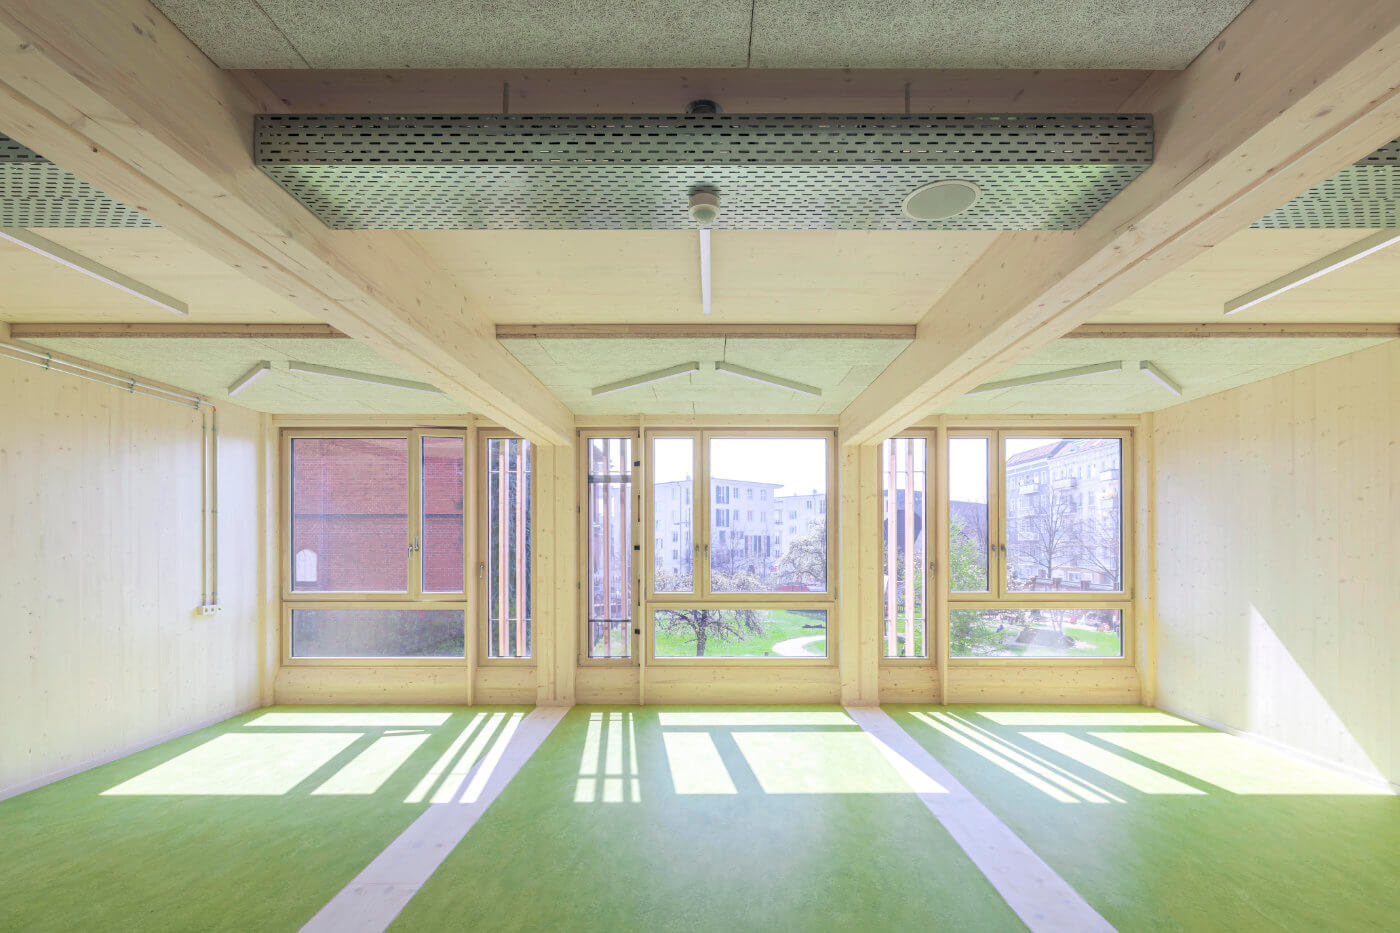 Klassenraum mit großen Fenstern und Holzdecke